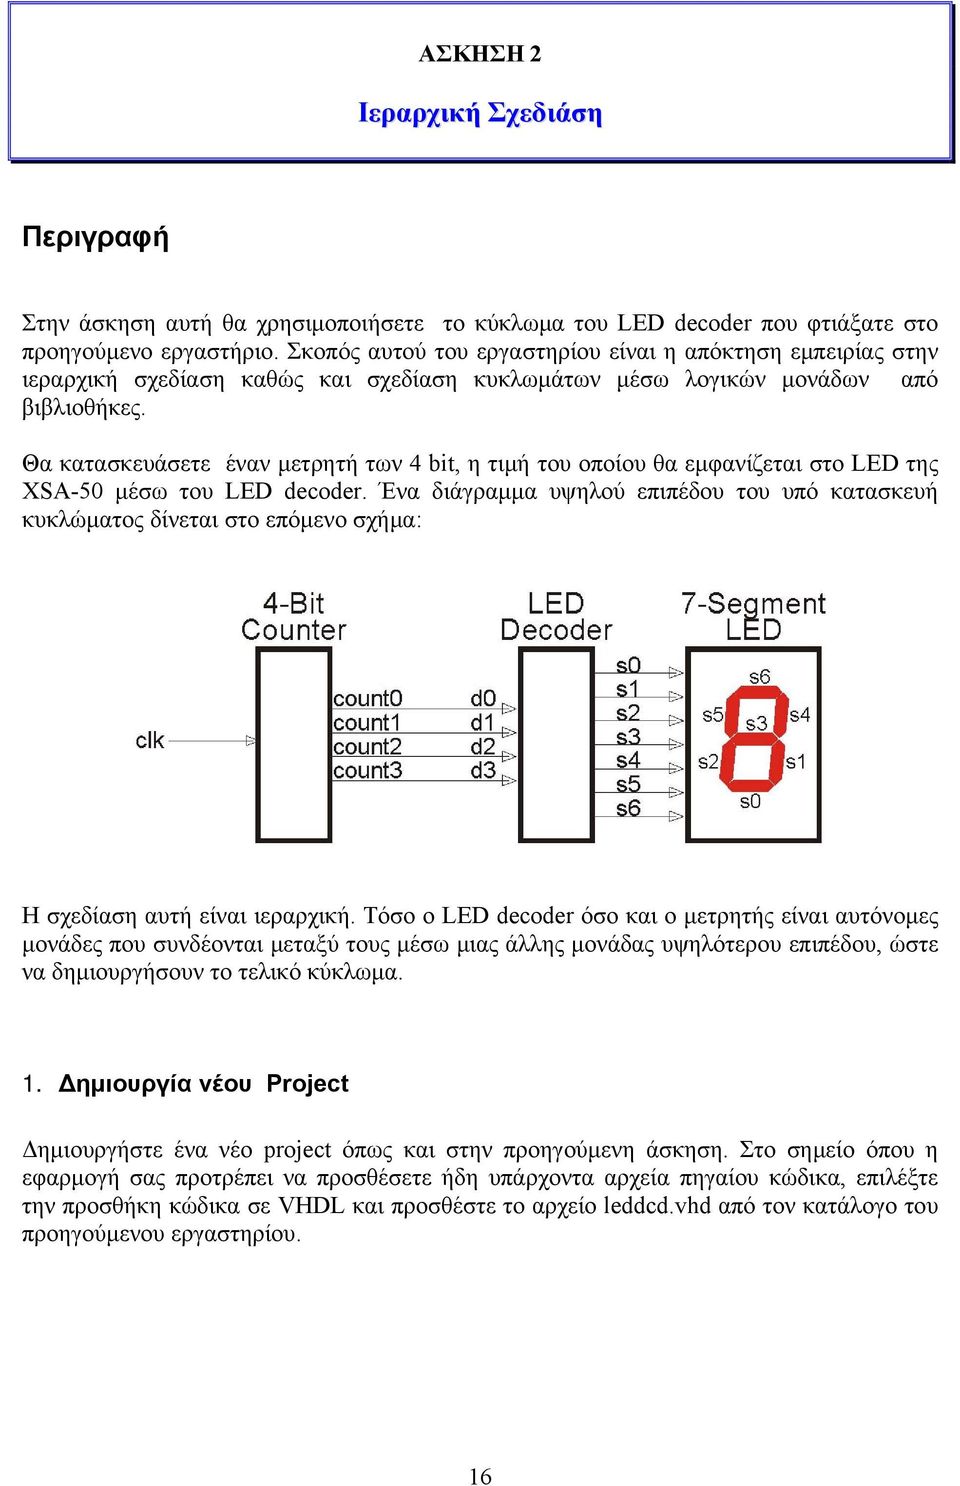 Θα κατασκευάσετε έναν μετρητή των 4 bit, η τιμή του οποίου θα εμφανίζεται στο LED της XSA-50 μέσω του LED decoder.